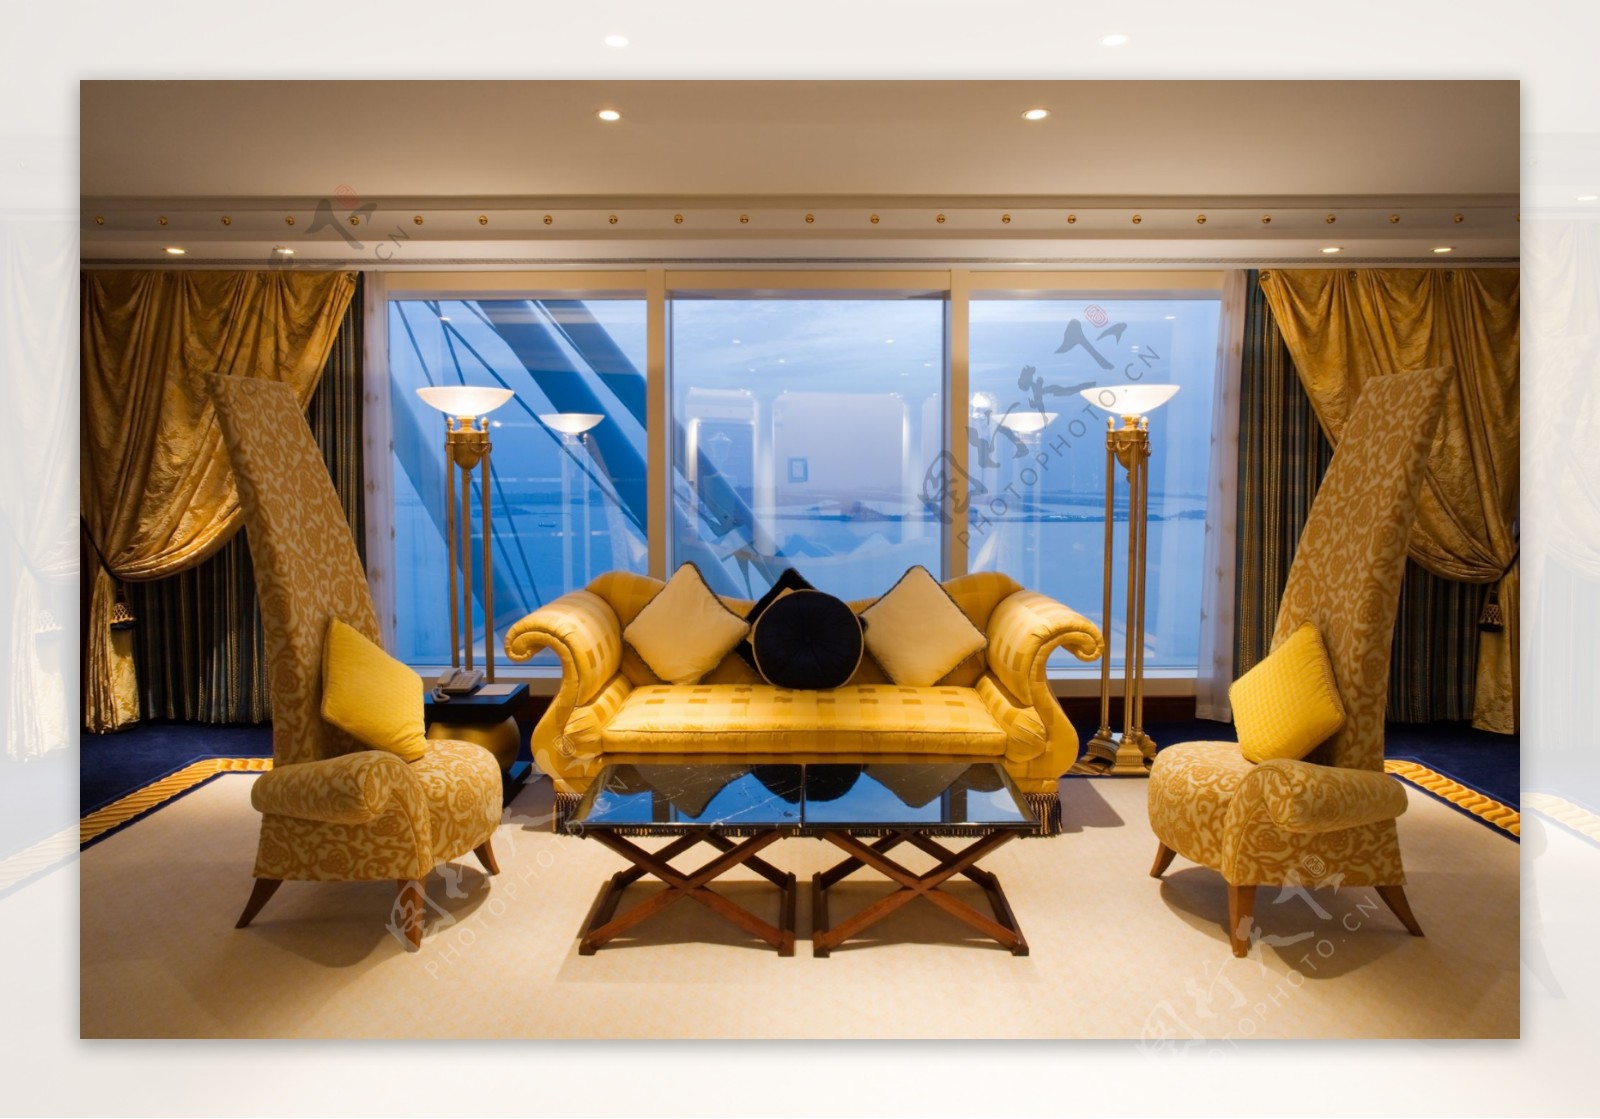 迪拜帆船酒店官方专业高清大图图片